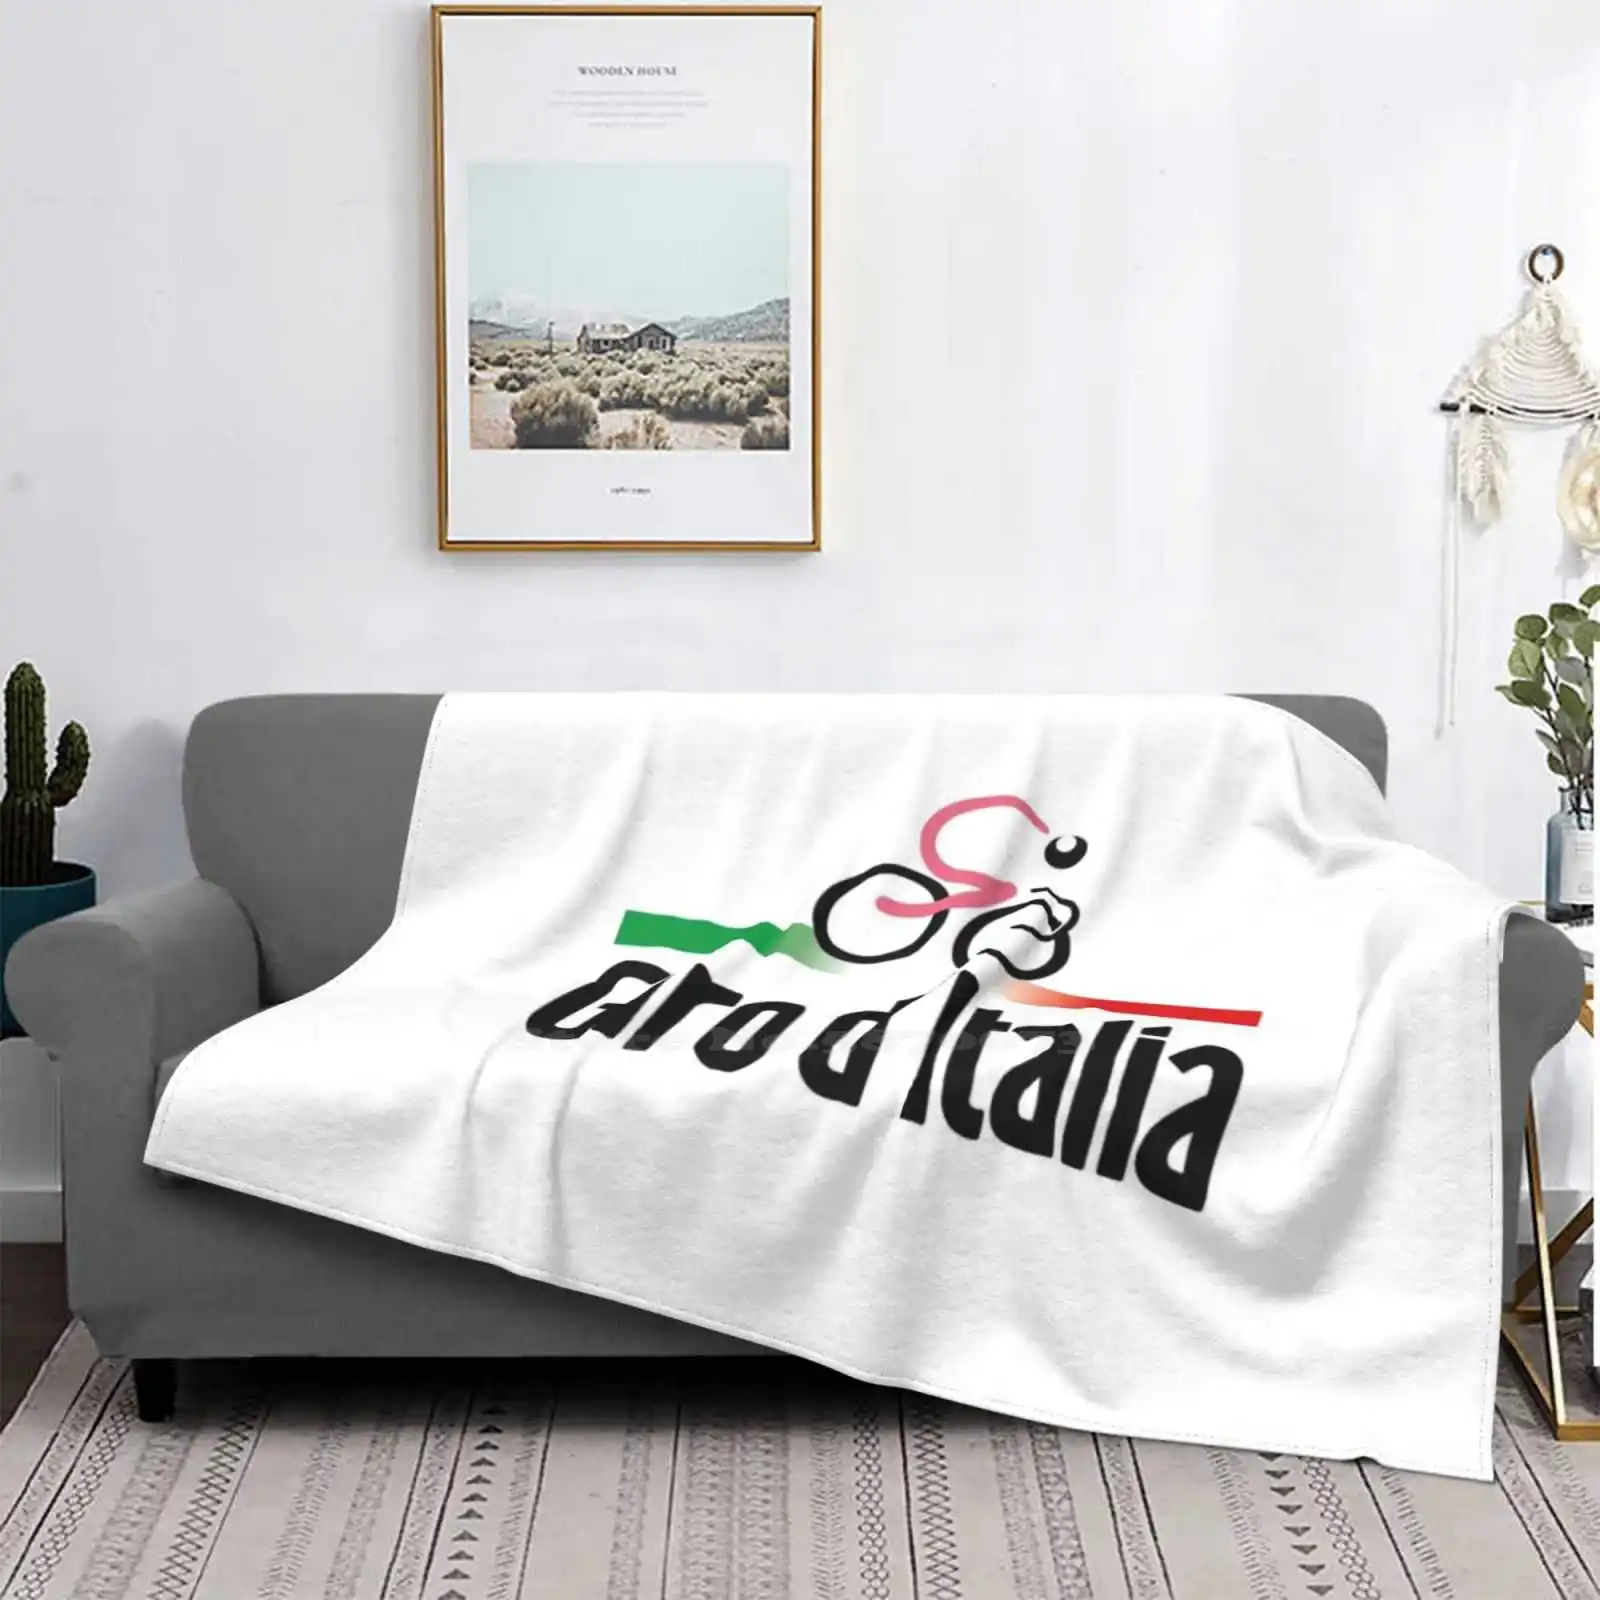 

Легкое мягкое фланелевое одеяло Giro D'Italia, креативный дизайн светильник легкое одеяло для велоспорта, велосипеда, горного велосипеда, профес...